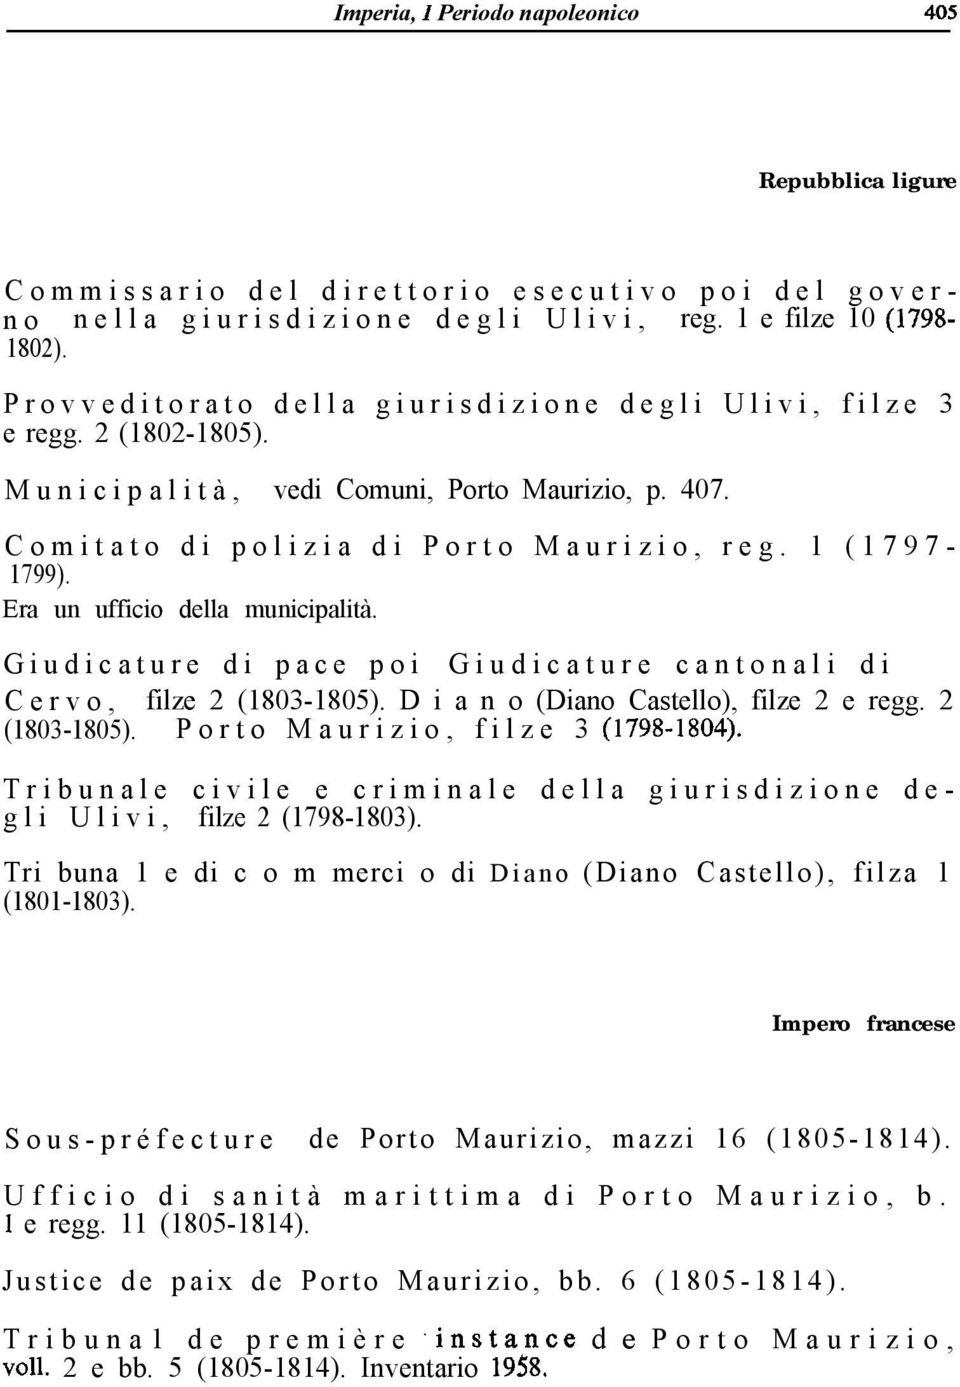 Era un ufficio della municipalità. Giudicature di pace poi Giudicature cantonali di Cervo, filze 2 (1803-1805). D i a n o (Diano Castello), filze 2 e regg. 2 (1803-1805). Porto Maurizio, filze 3 (1798-1804).